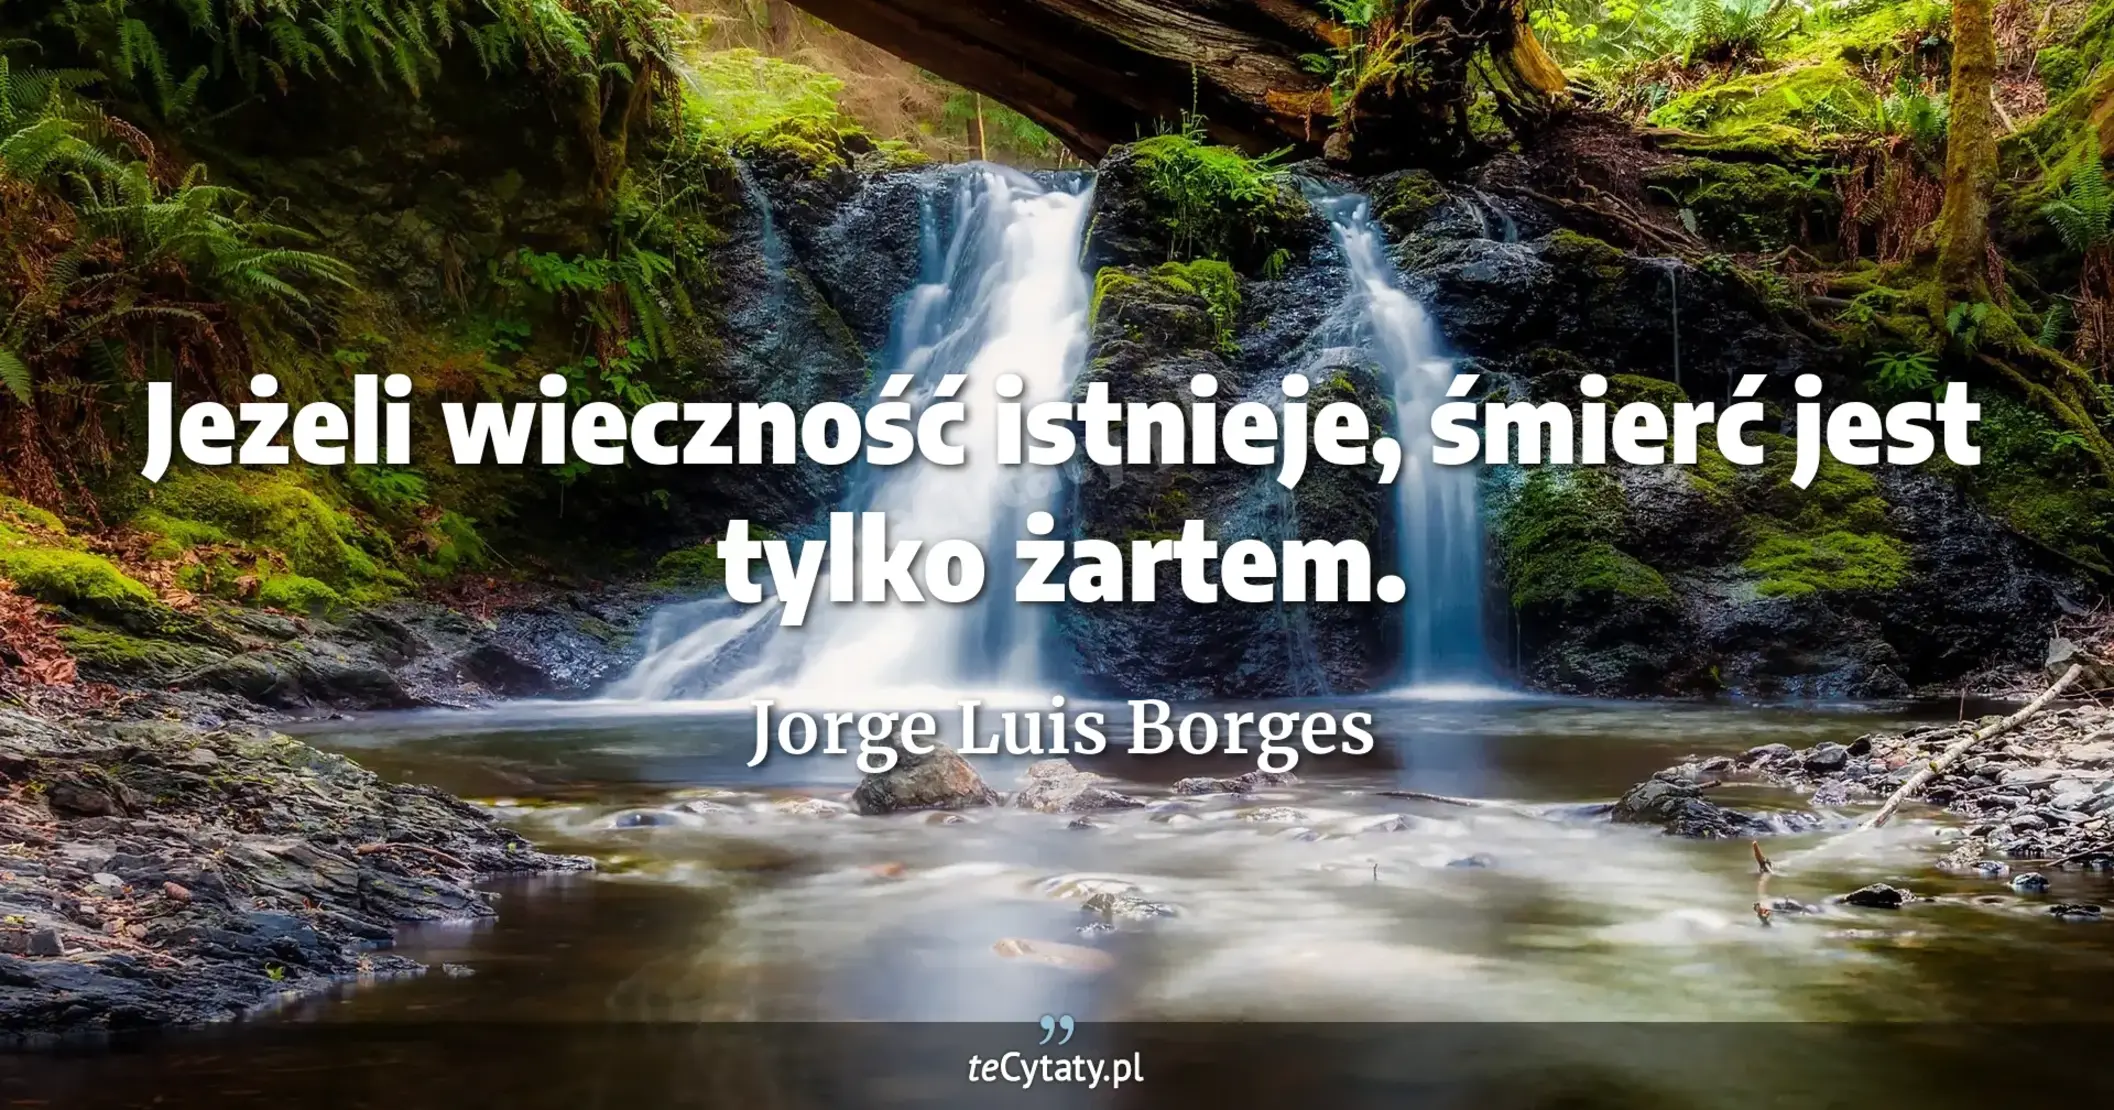 Jeżeli wieczność istnieje, śmierć jest tylko żartem. - Jorge Luis Borges